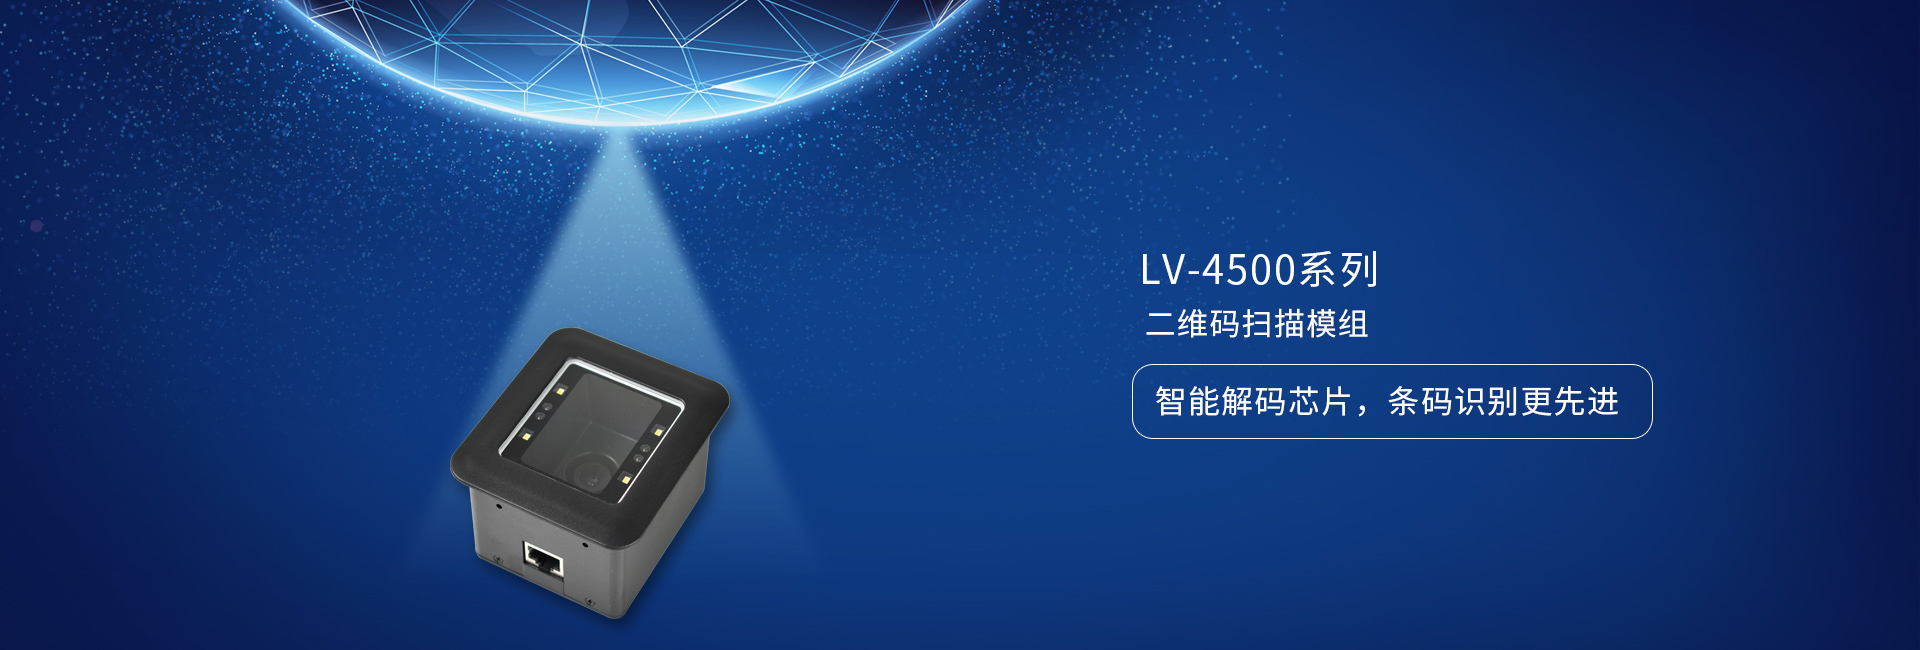 LV4500系列二维码扫描模组——智能解码芯片，条码识别更先进